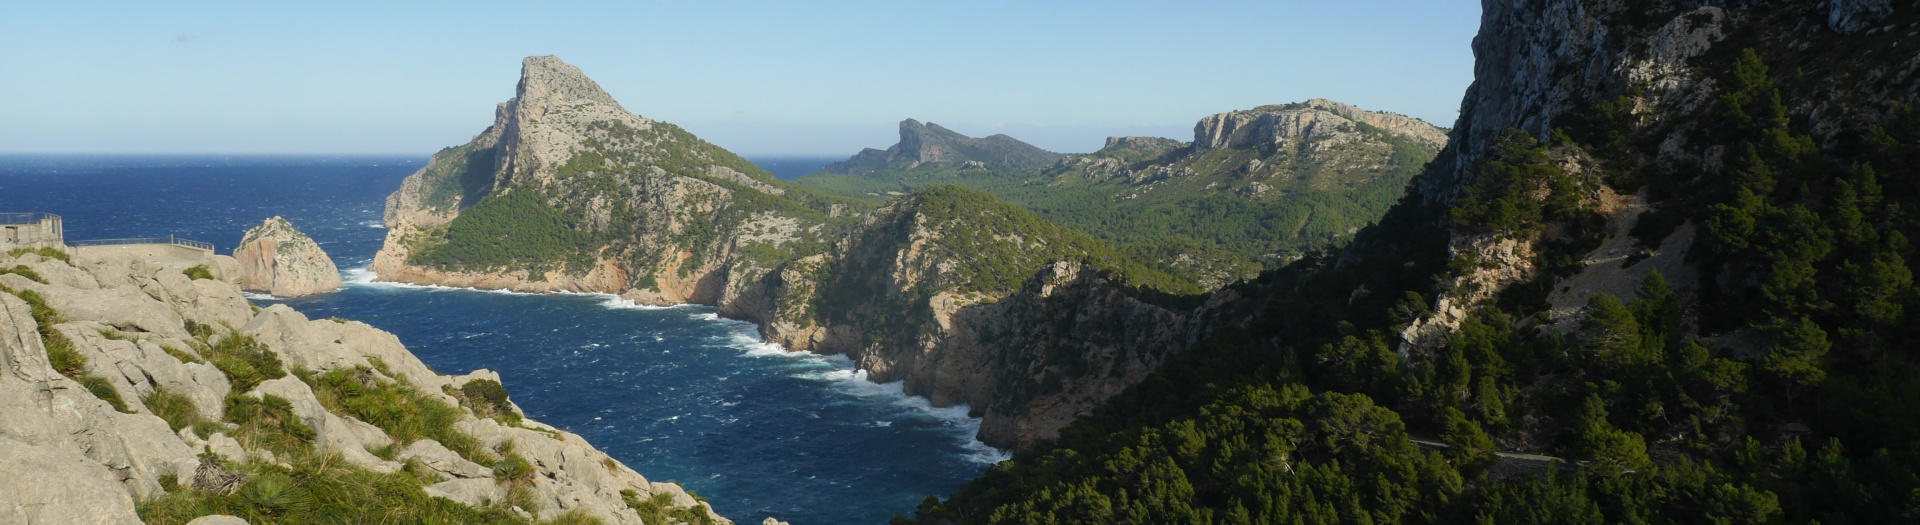 Randonnées sur les sentiers de Majorque